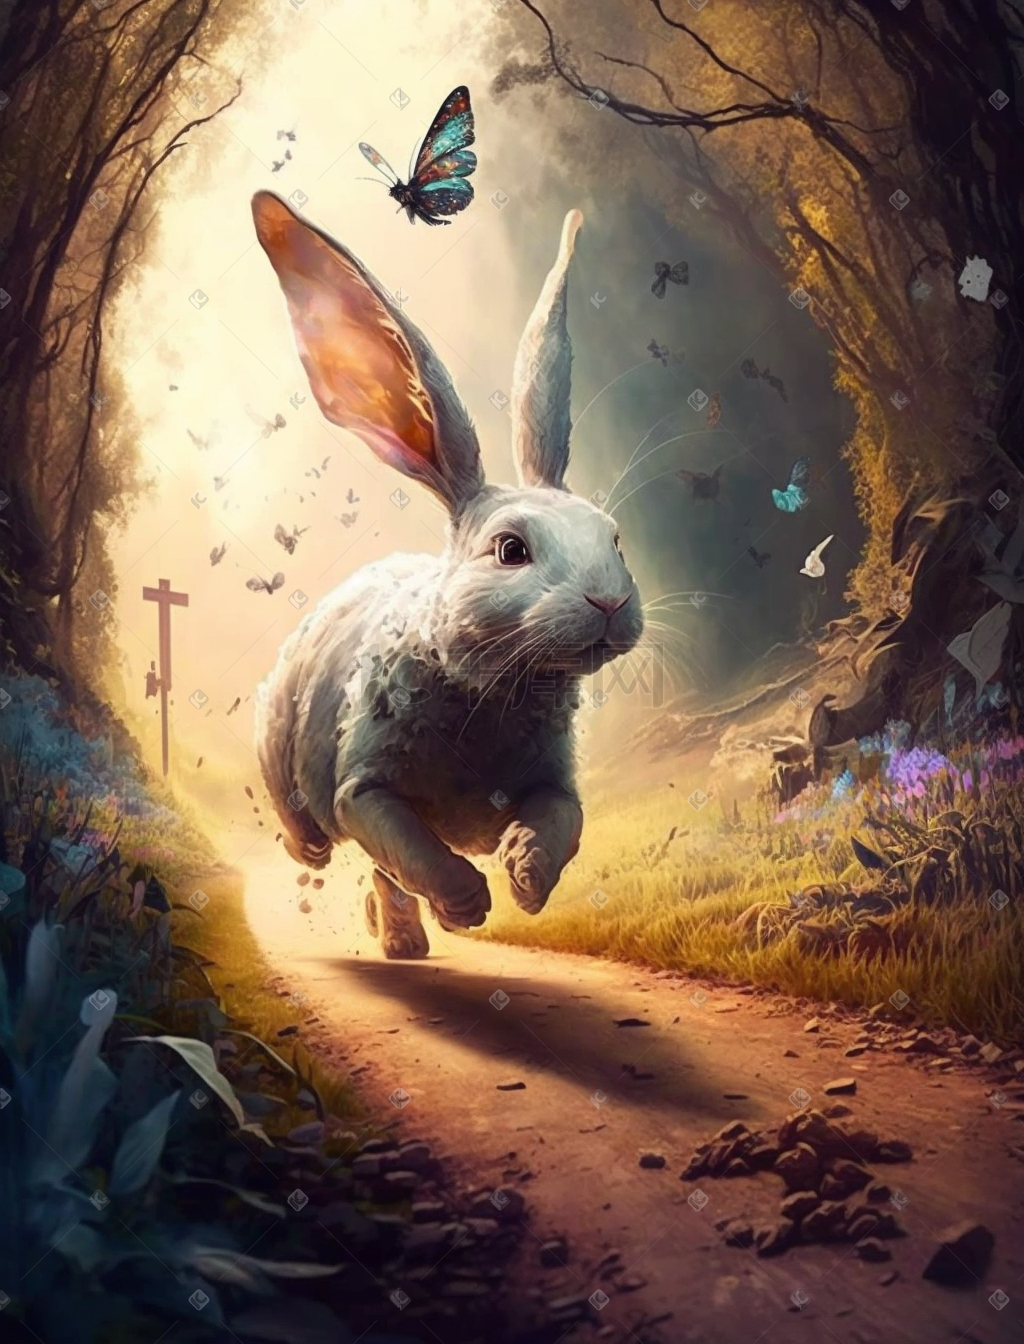 森林里可爱奔跑的兔子图片